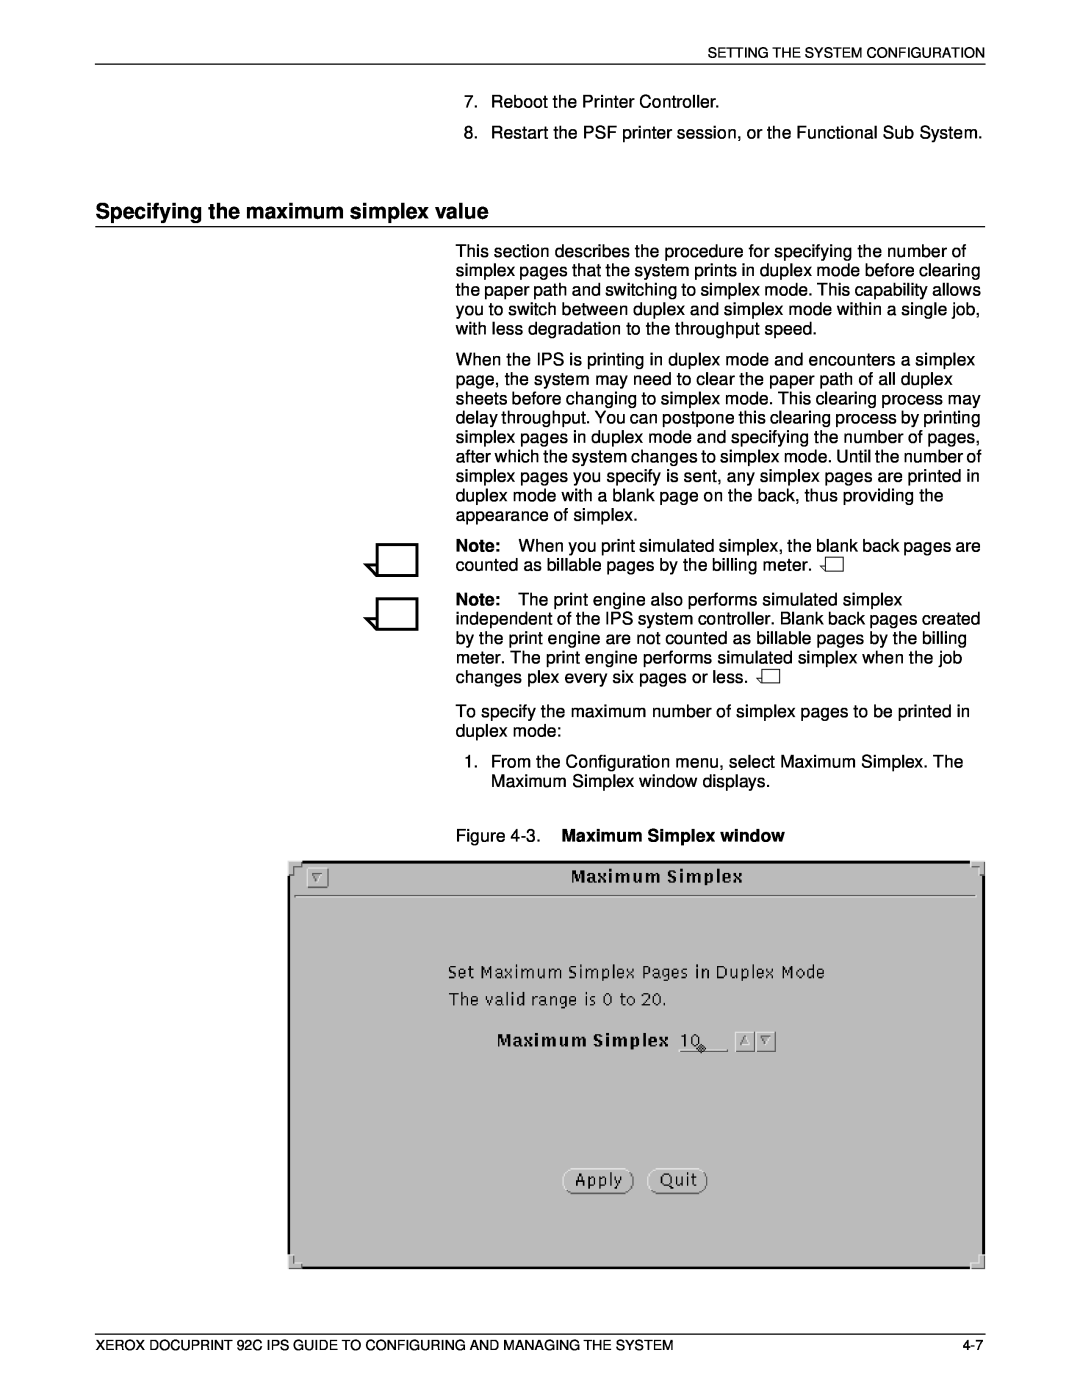 Xerox 92C IPS manual Specifying the maximum simplex value, 3. Maximum Simplex window 